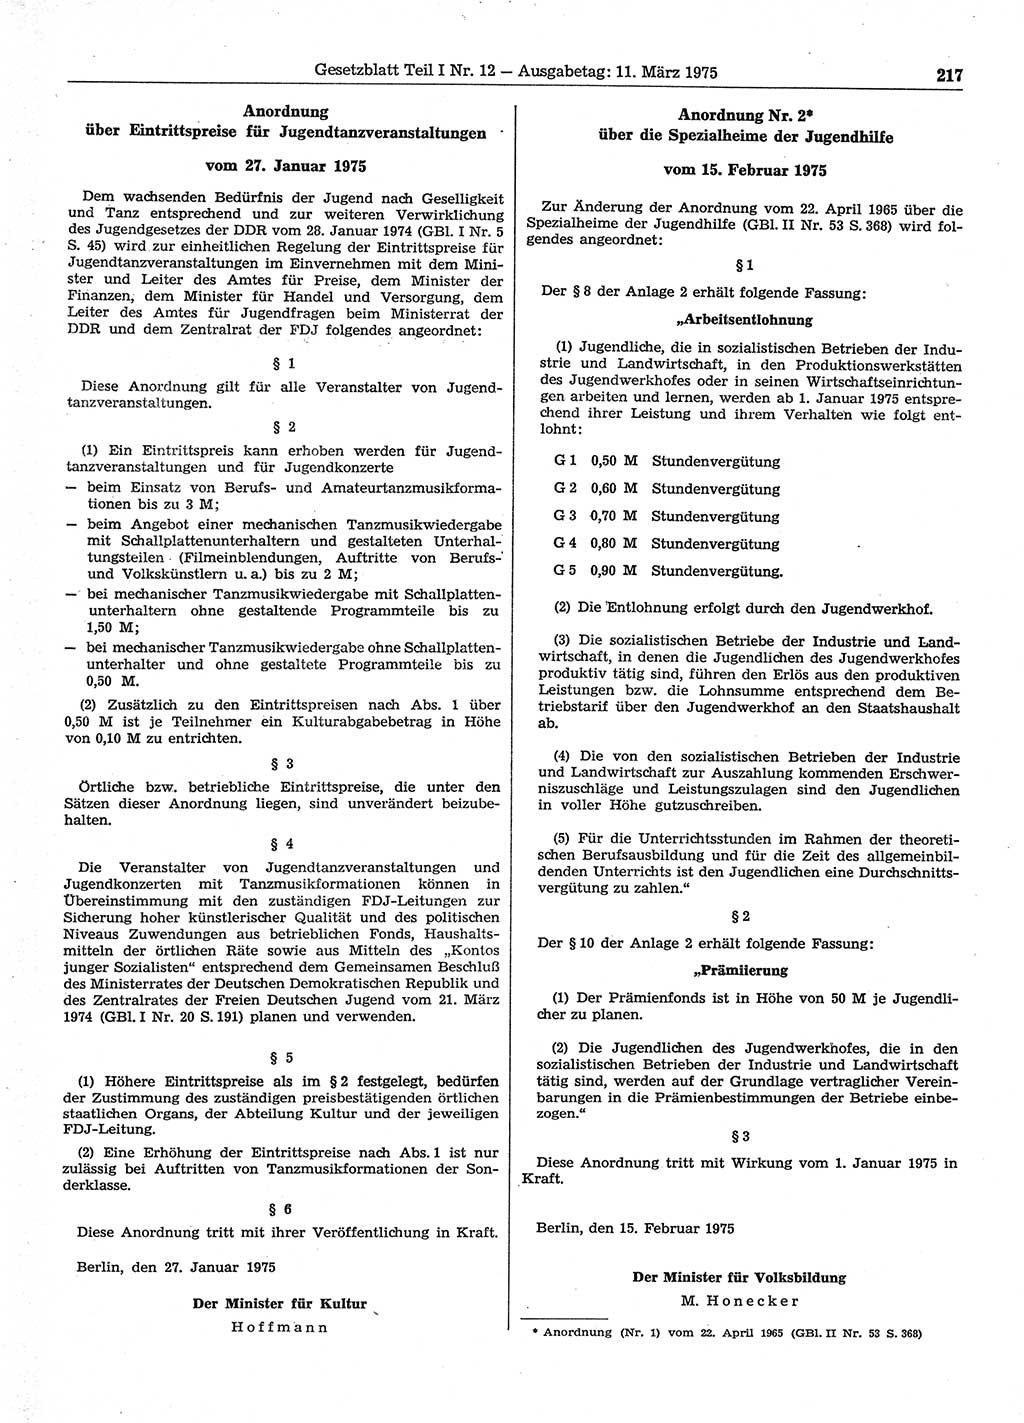 Gesetzblatt (GBl.) der Deutschen Demokratischen Republik (DDR) Teil Ⅰ 1975, Seite 217 (GBl. DDR Ⅰ 1975, S. 217)